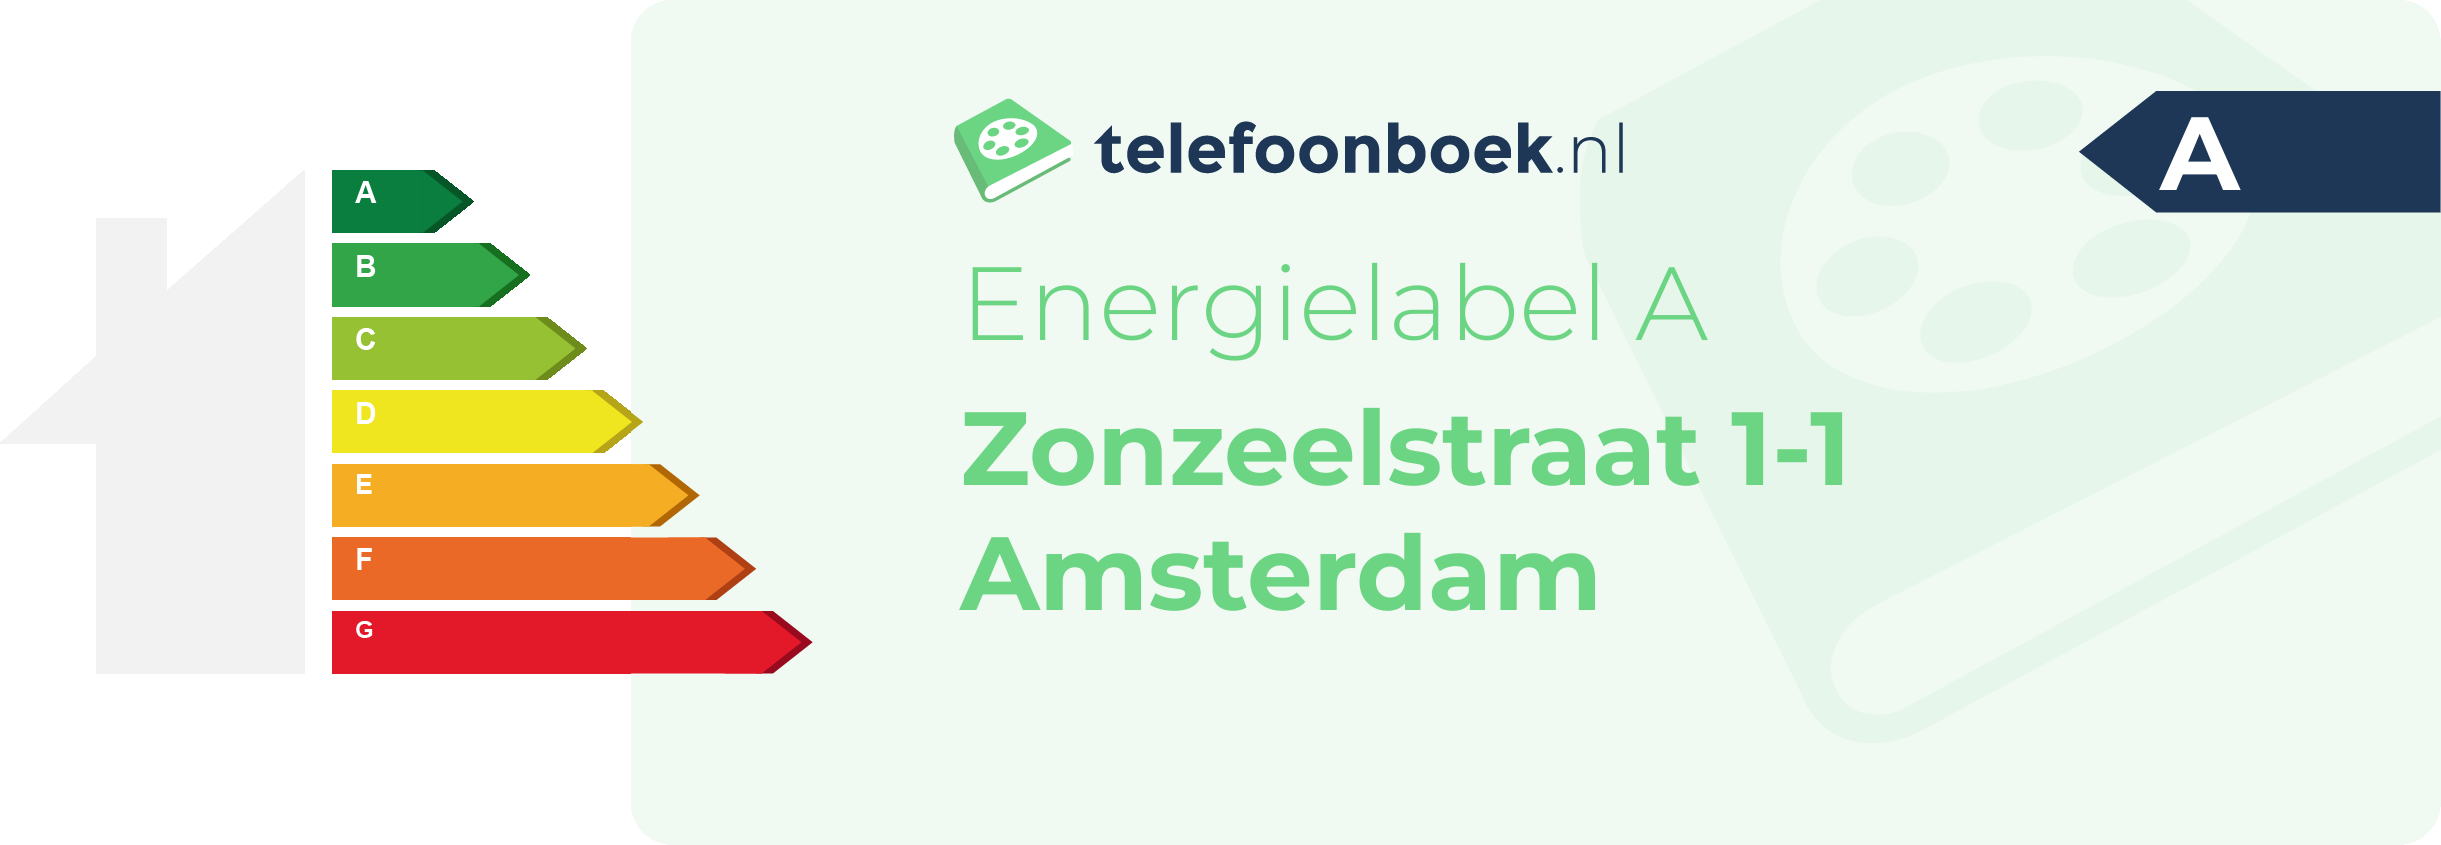 Energielabel Zonzeelstraat 1-1 Amsterdam